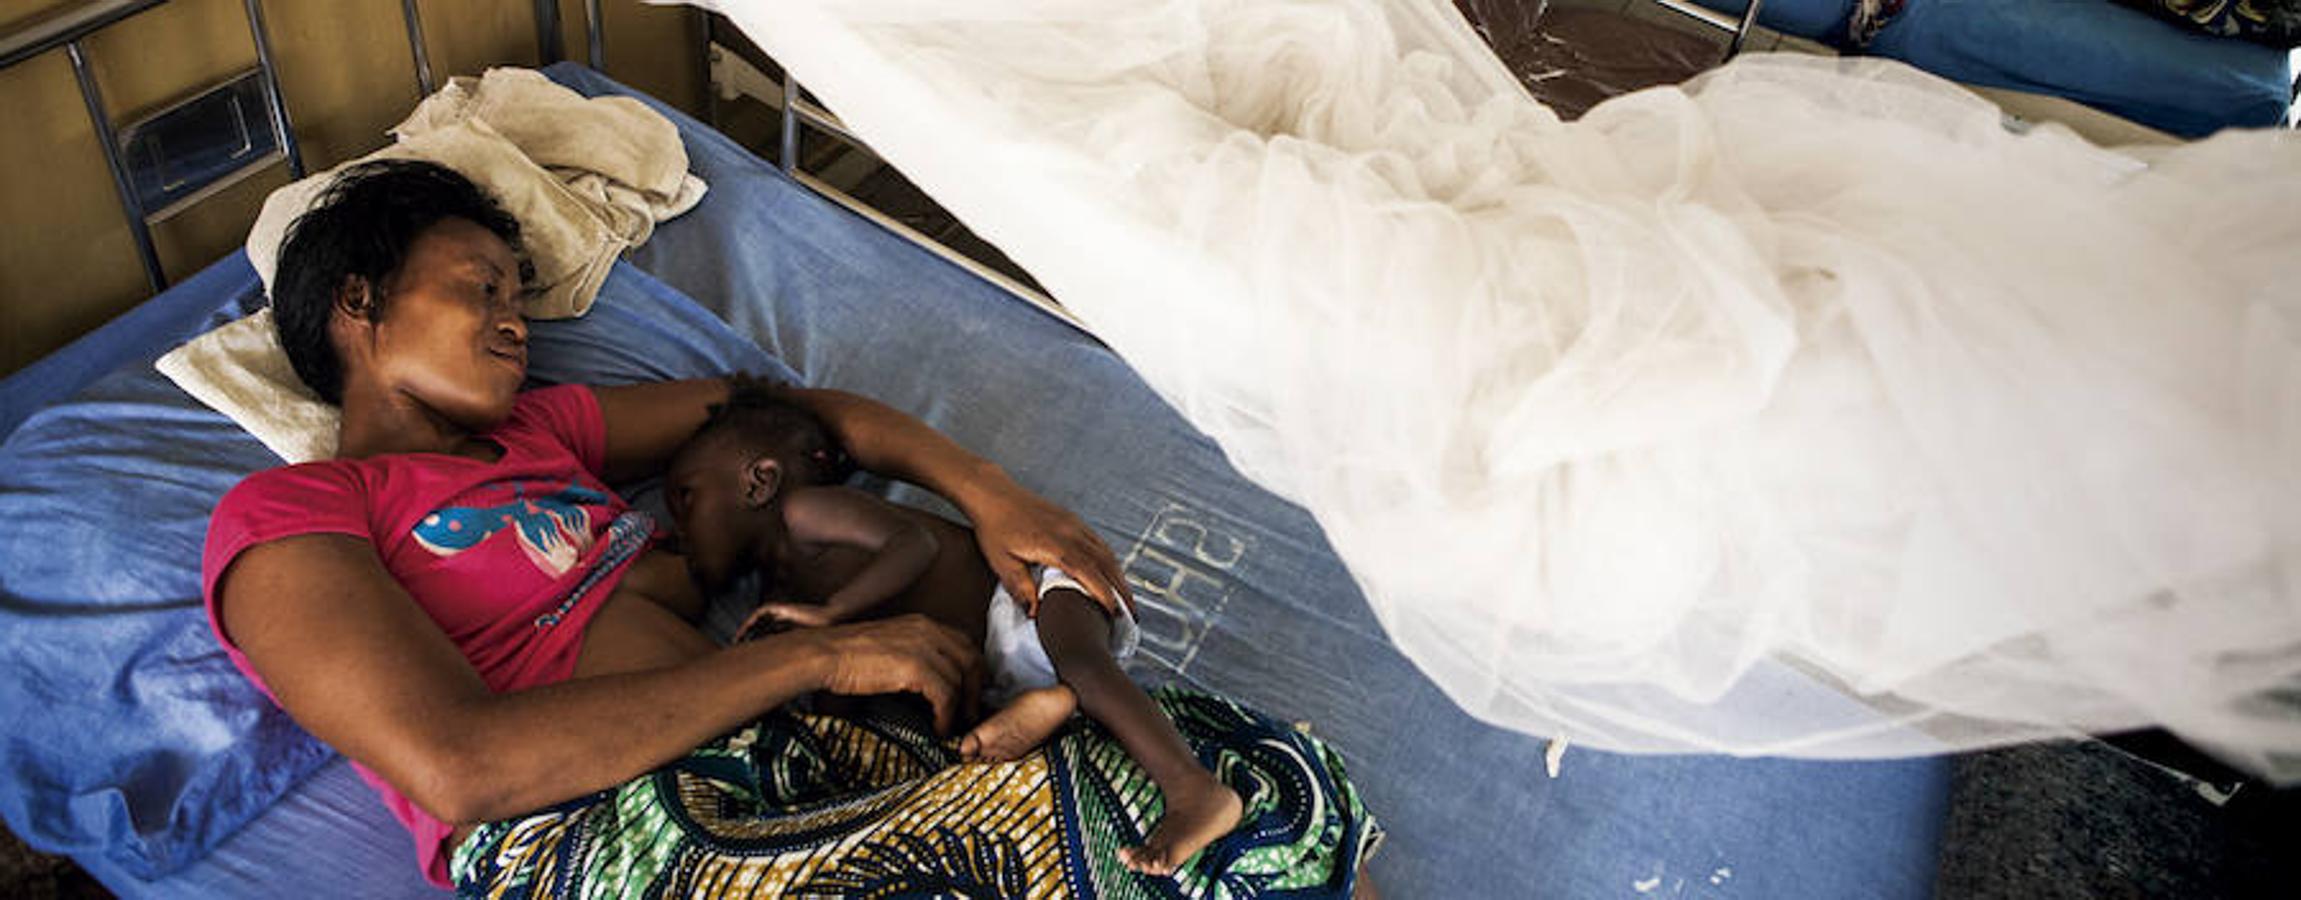 El virus del Ébola embistió duramente a un país ya deteriorado por diez años de guerra civil. Hoy el mayor reto es que la epidemia que acabó con la vida de cerca de 10.000 personas no arrase a su paso los medios de vida y la seguridad alimentaria de miles de supervivientes.. 